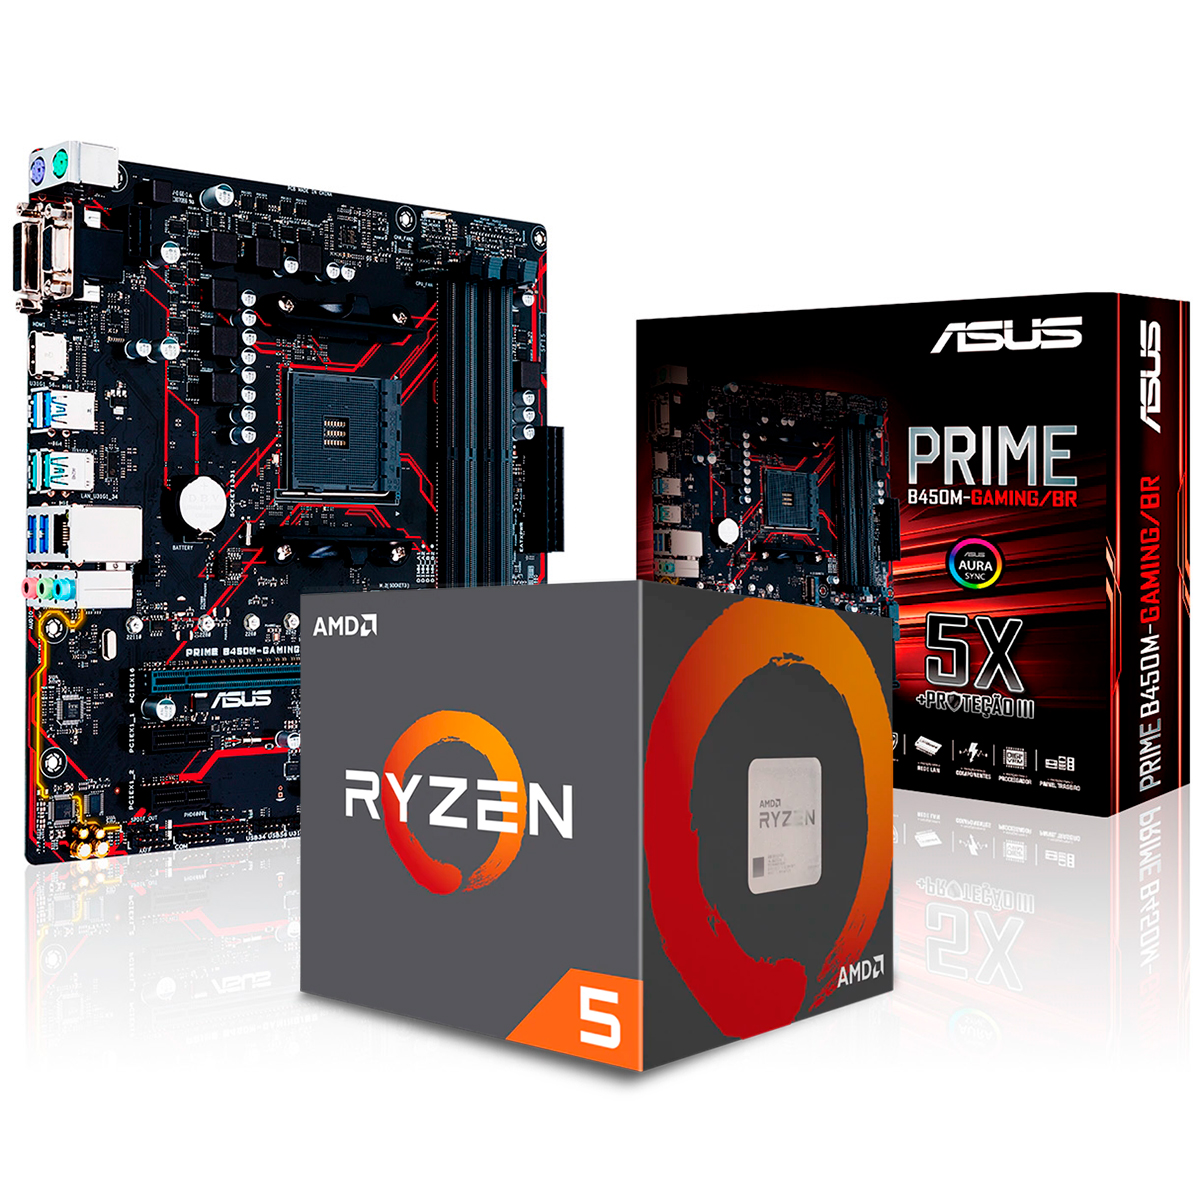 Kit Upgrade AMD Ryzen™ 5 3400G + Asus Prime B450M GAMING/BR